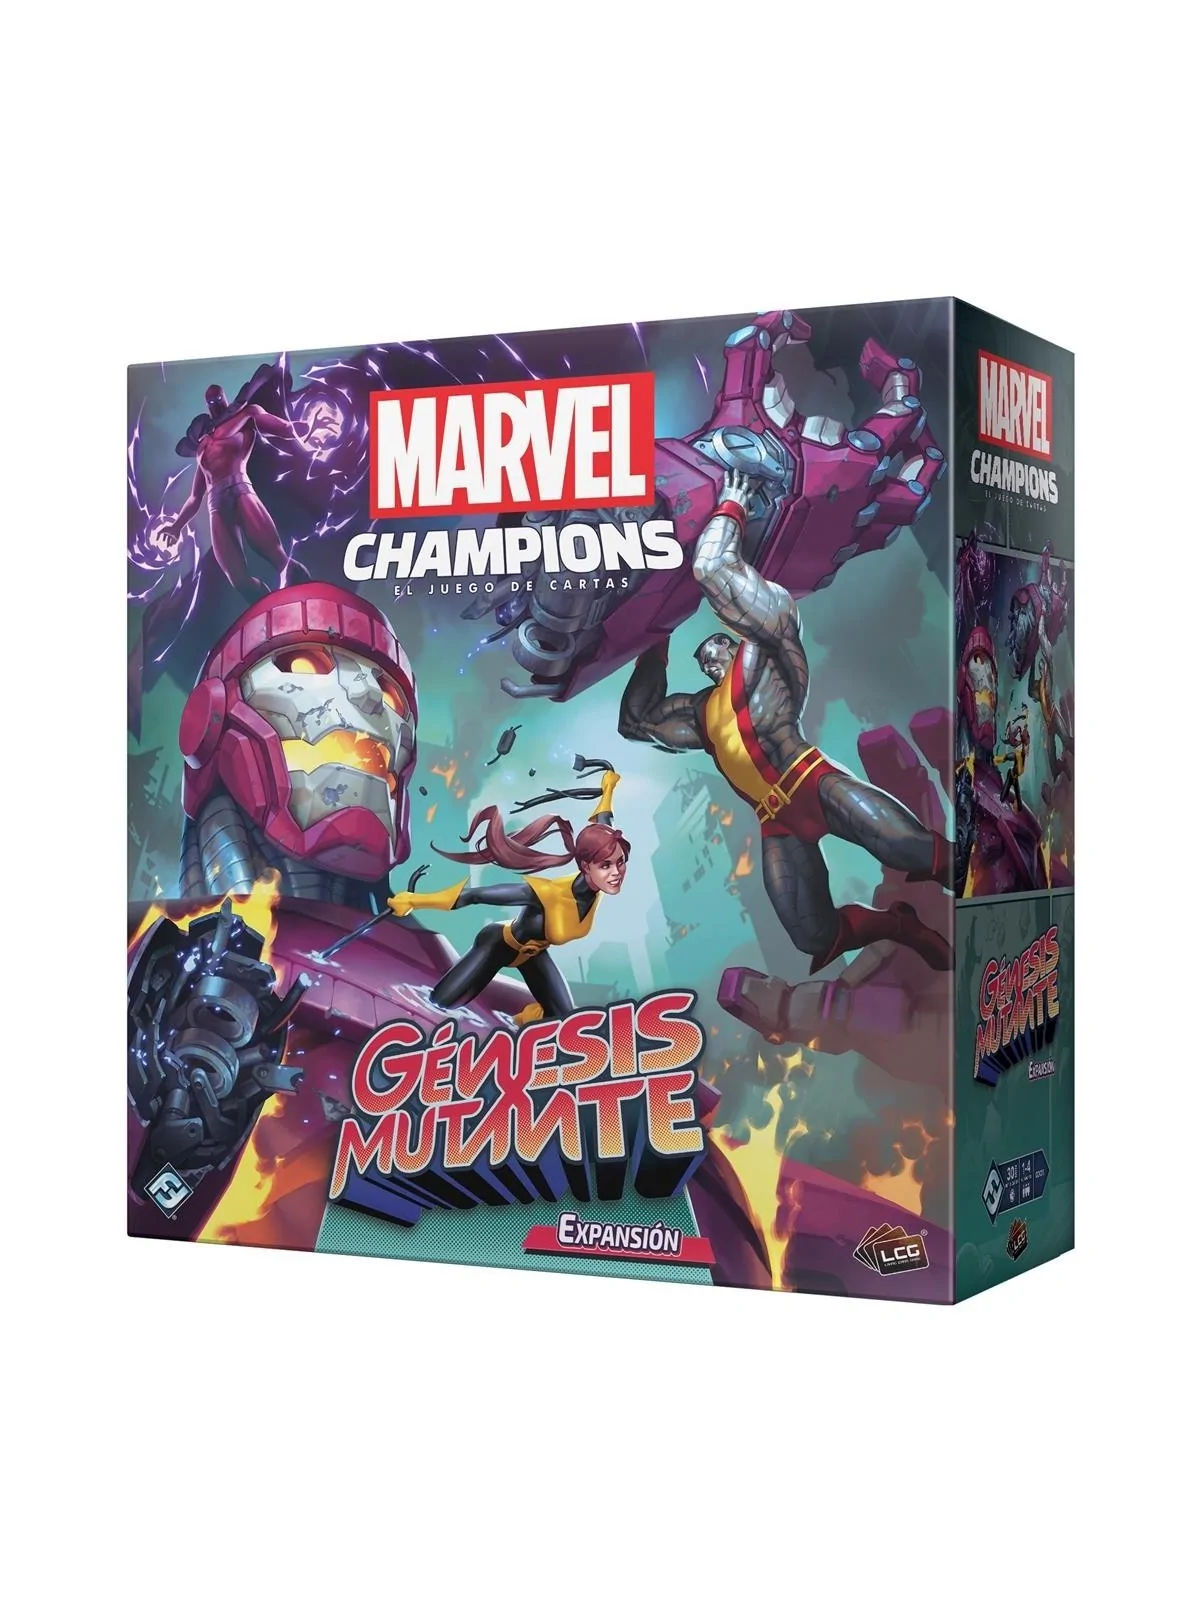 Comprar Marvel Champions: Génesis Mutante barato al mejor precio 44,99